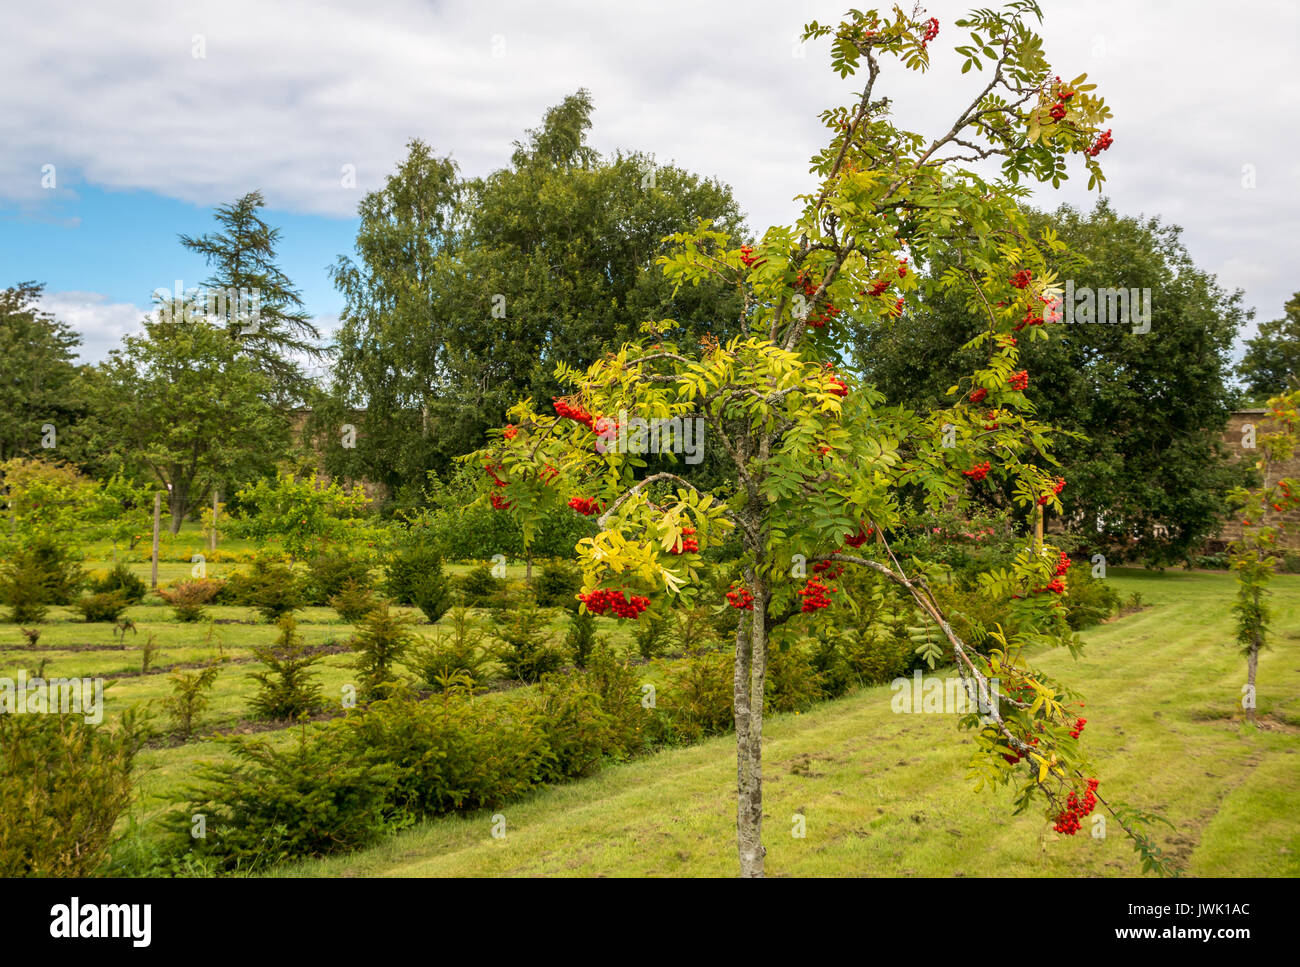 Blühender Rowan-Baum, Gebirgsasche und junge Eibenhecken im Amisfield Walled Garden aus dem 18. Jahrhundert, Haddington, East Lothian, Schottland, Großbritannien Stockfoto